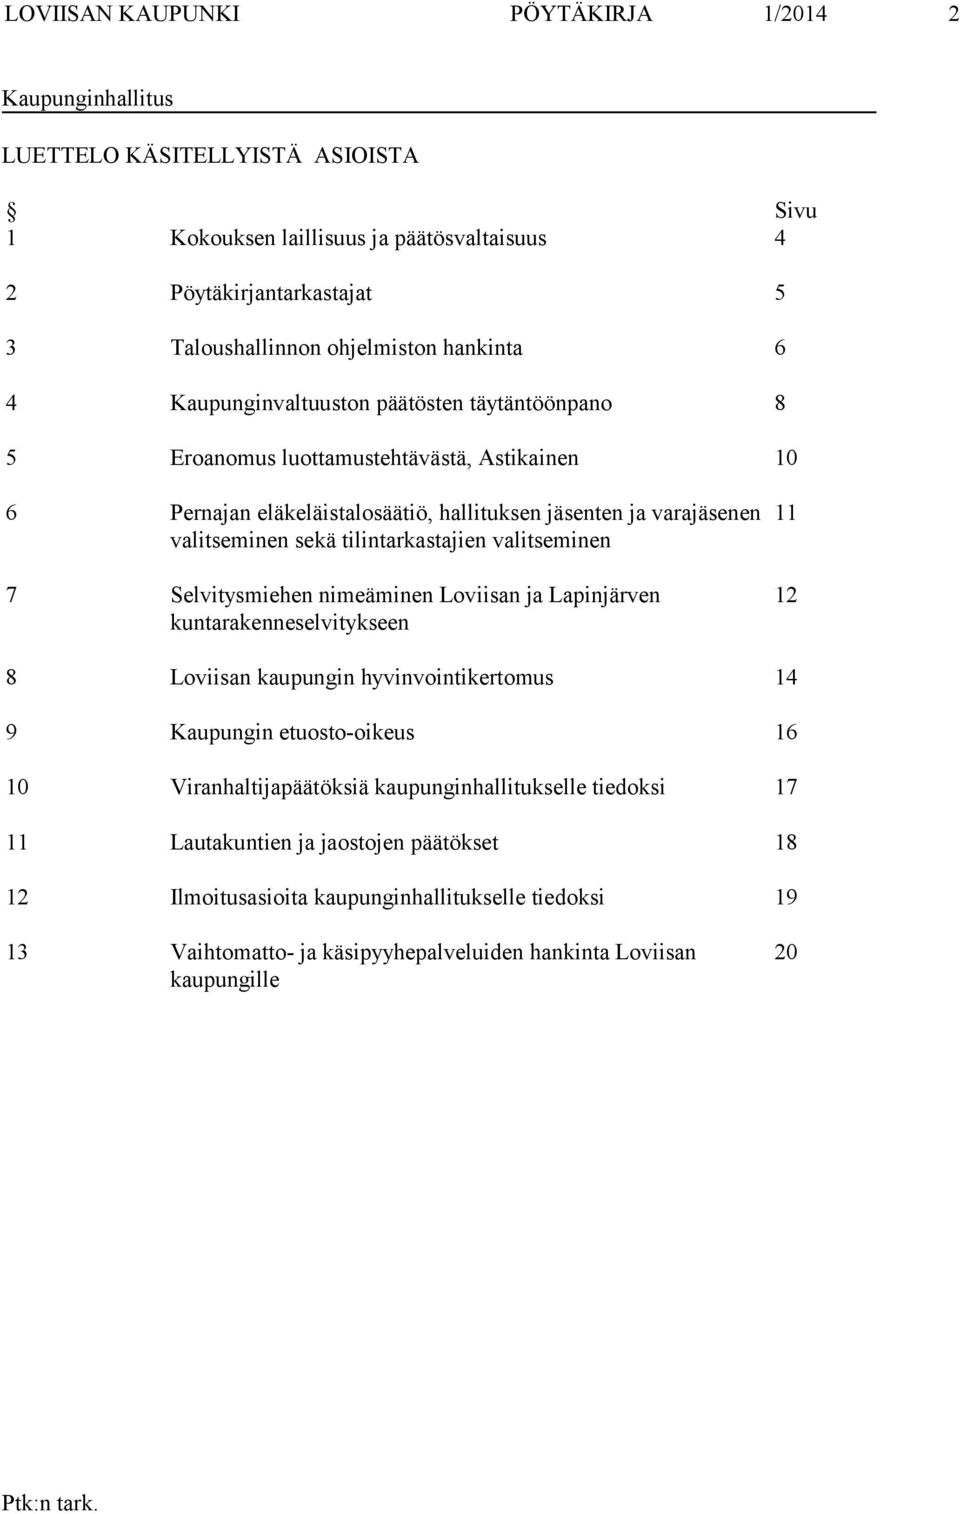 tilintarkastajien valitseminen 7 Selvitysmiehen nimeäminen Loviisan ja Lapinjärven kuntarakenneselvitykseen 11 12 8 Loviisan kaupungin hyvinvointikertomus 14 9 Kaupungin etuosto-oikeus 16 10